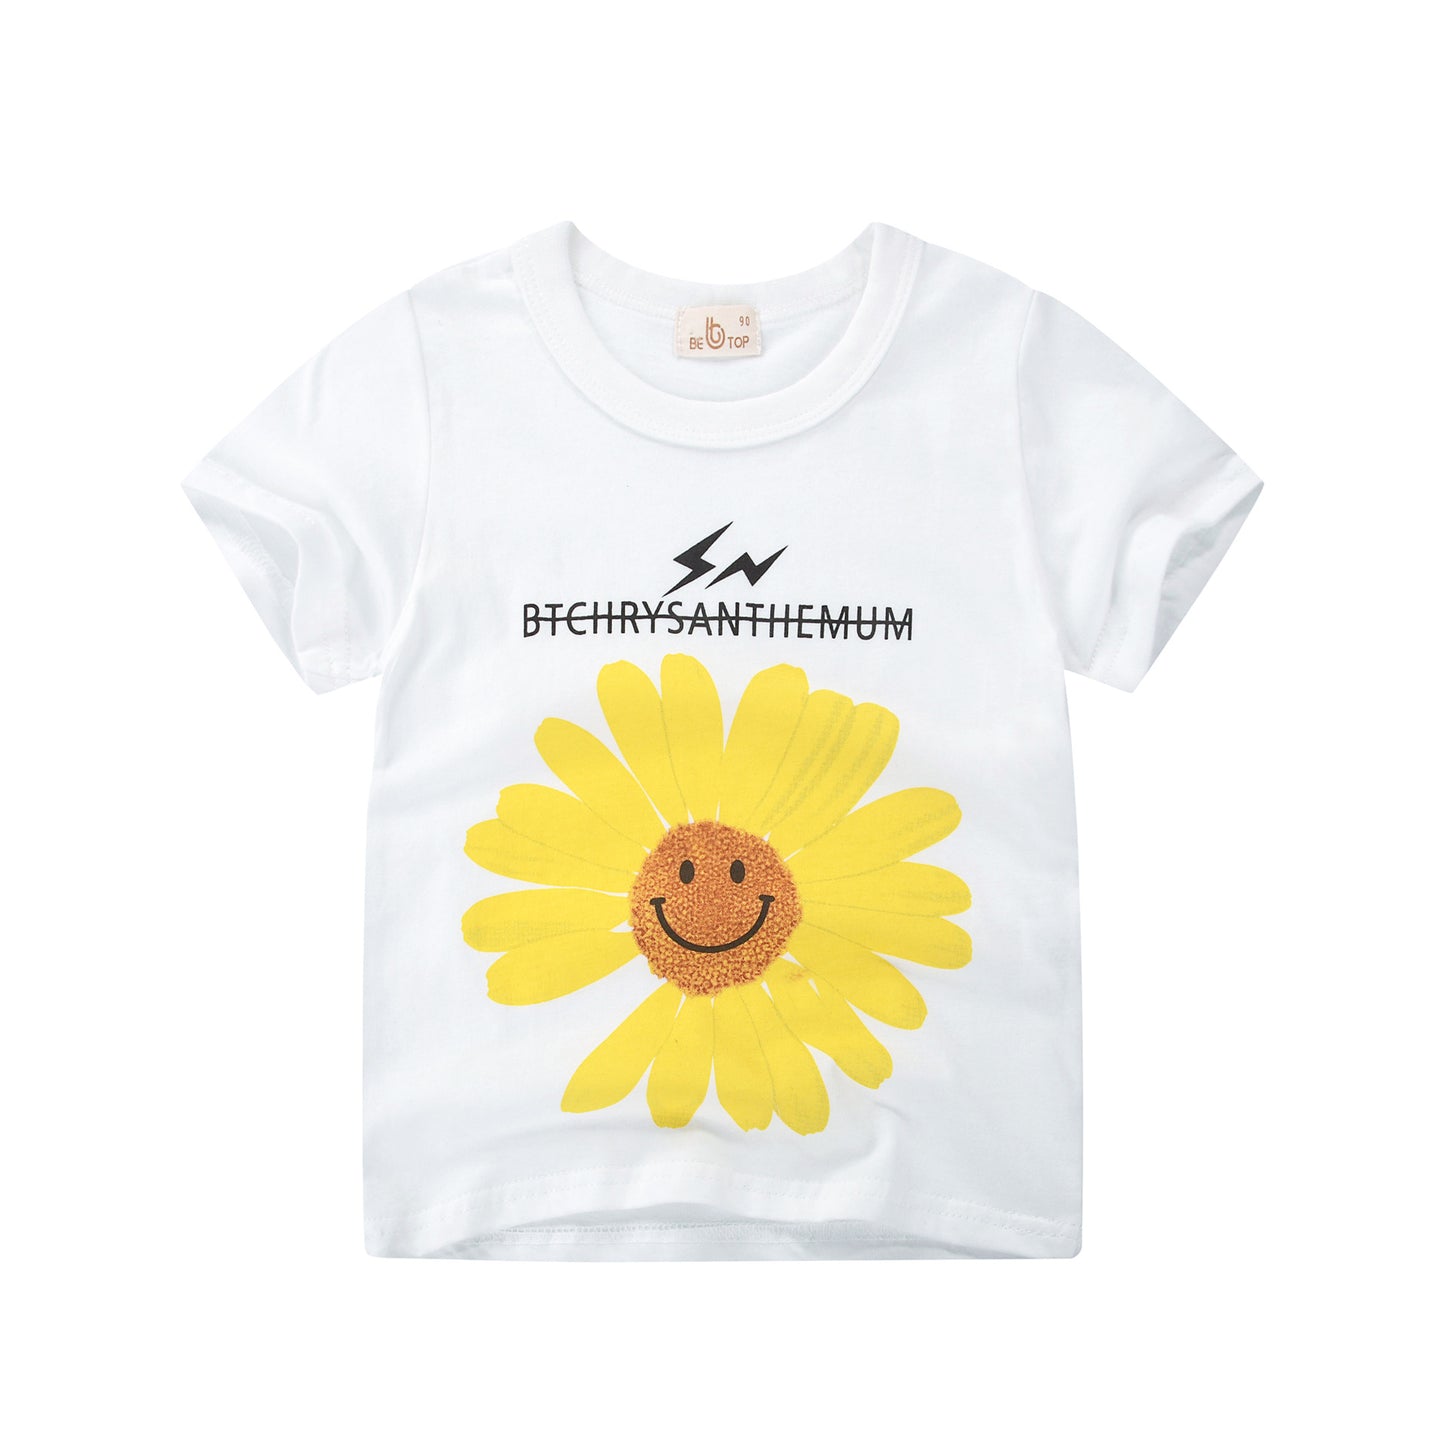 27kids Brand Children's Clothing Korean Children's Short-Sleeved T-shirt Wholesale Summer New Boys' Tops For One Generation